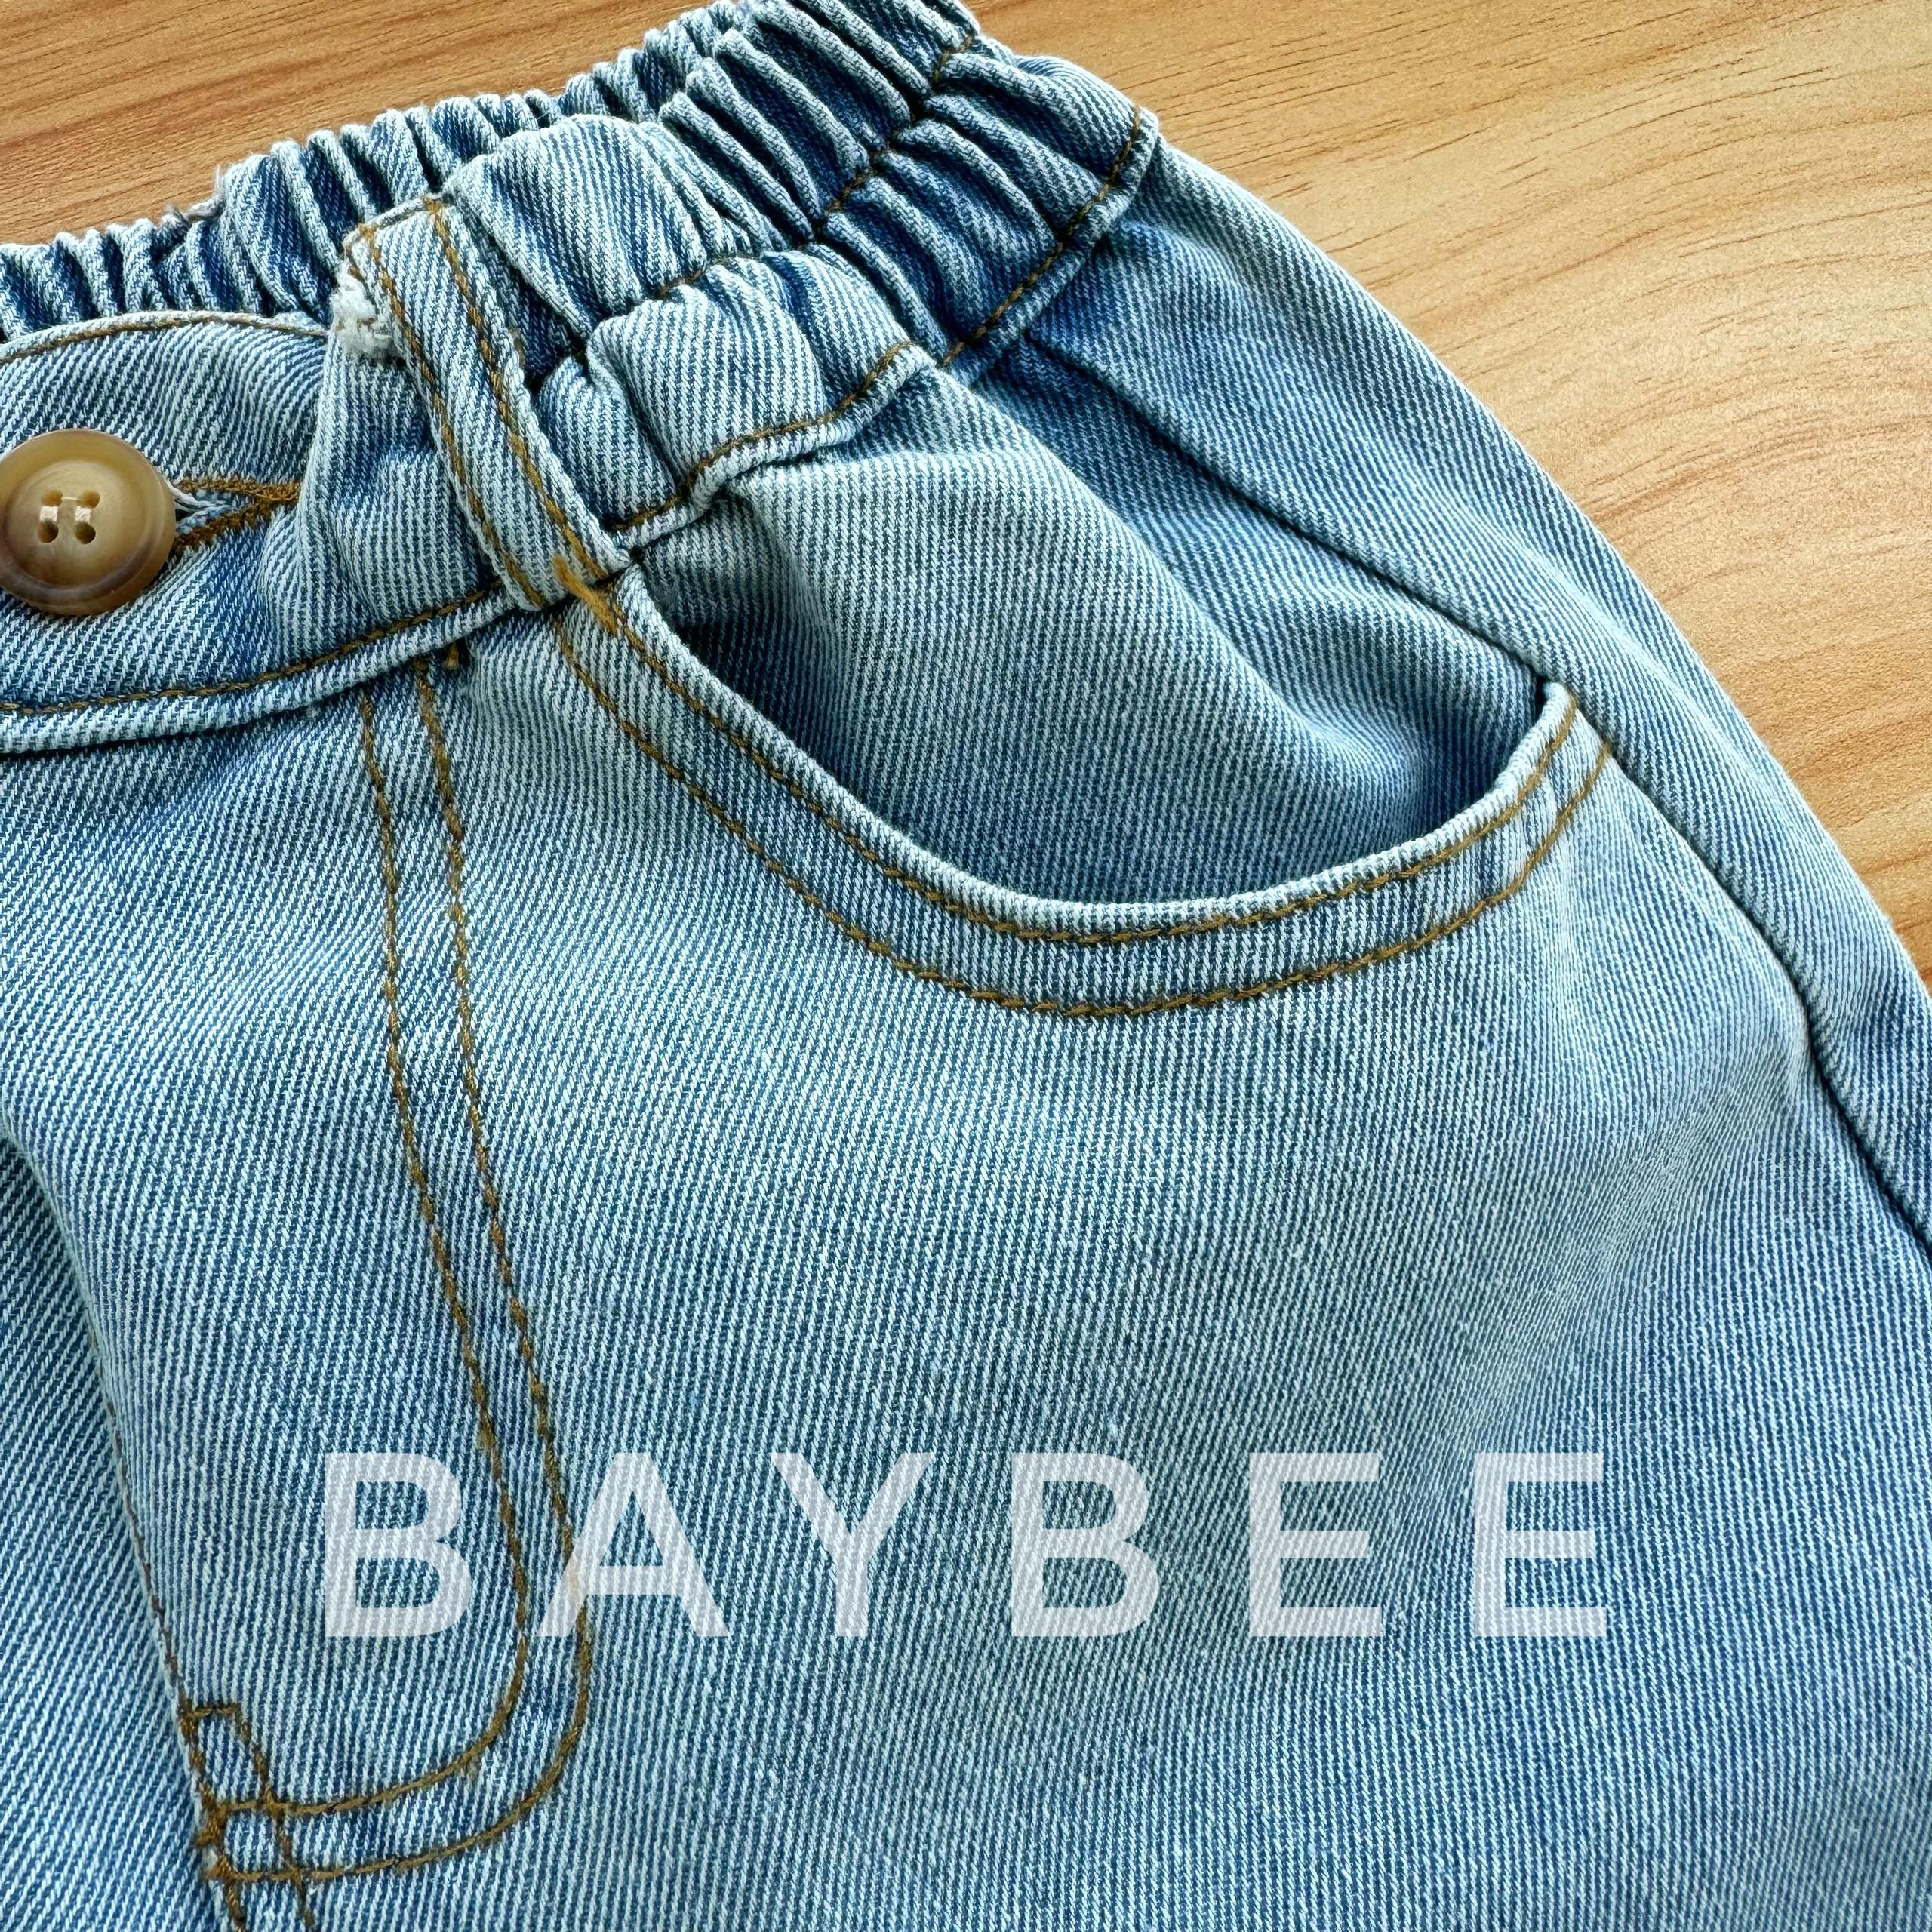 激安販売Babybee button design denim salopette サロペット・オーバーオール・オールインワン